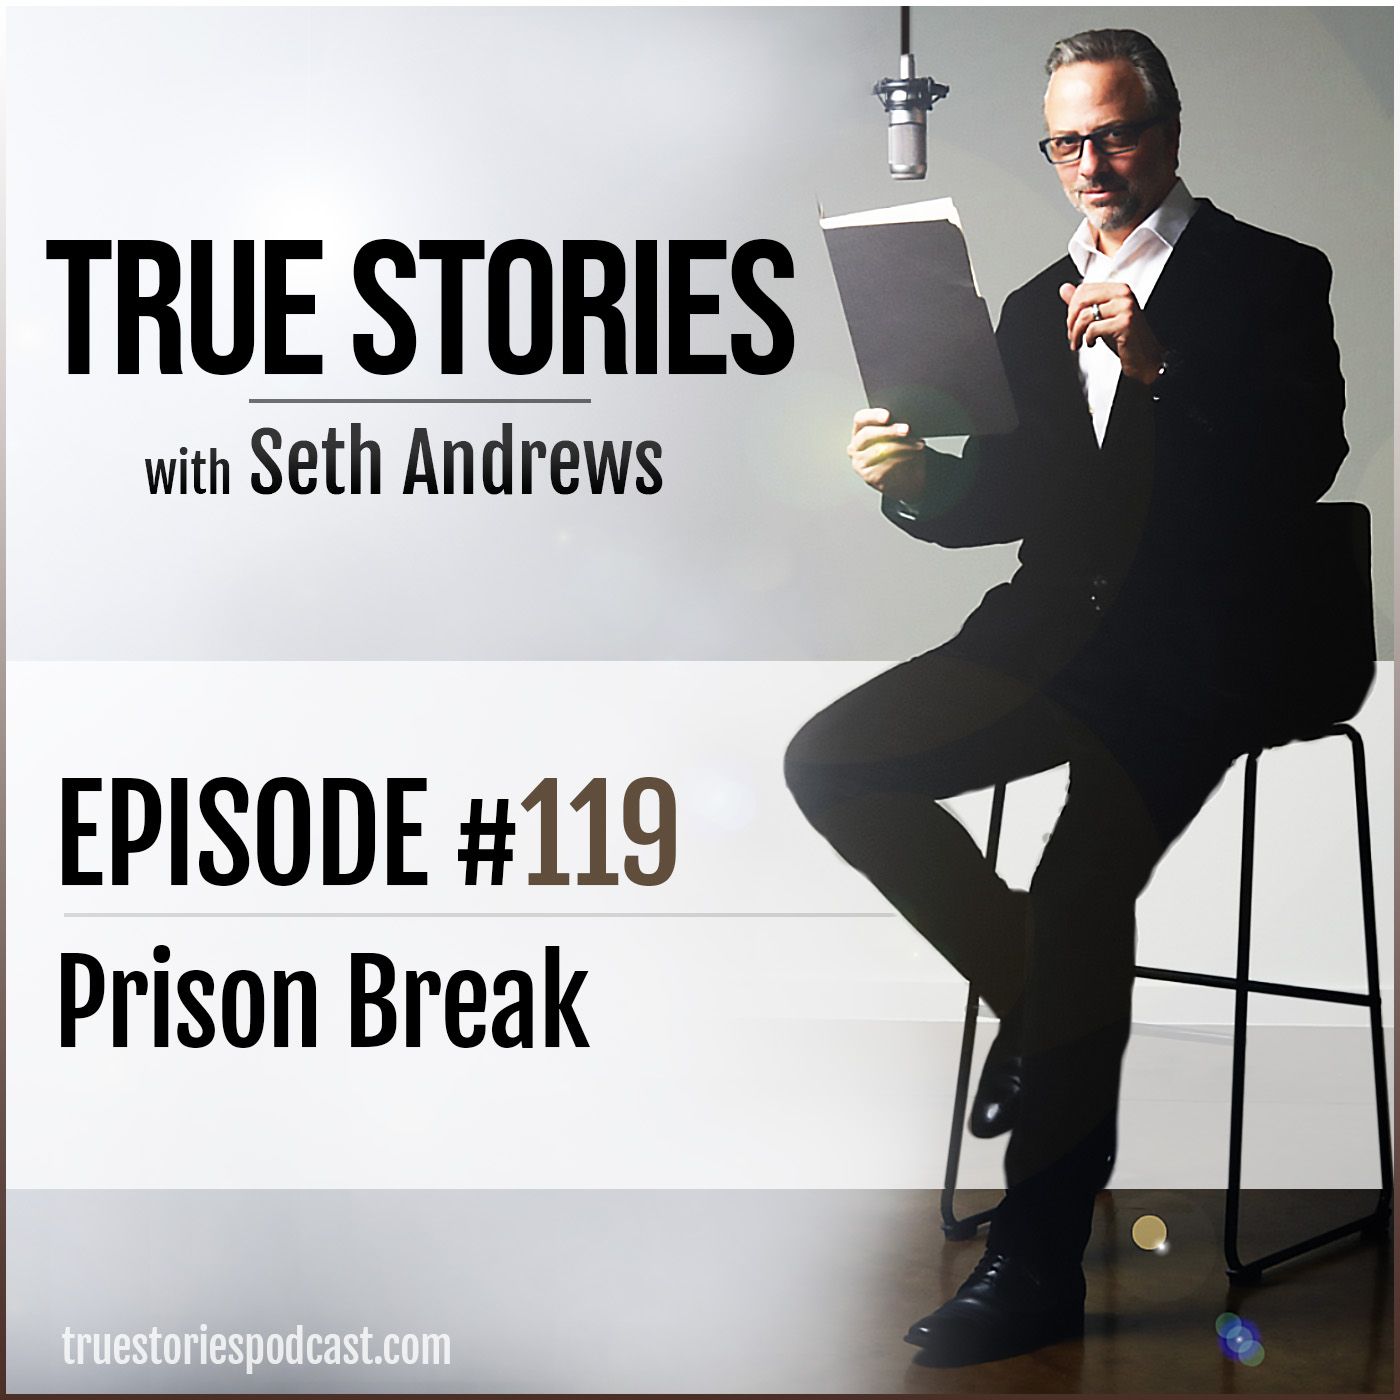 True Stories #119 - Prison Break